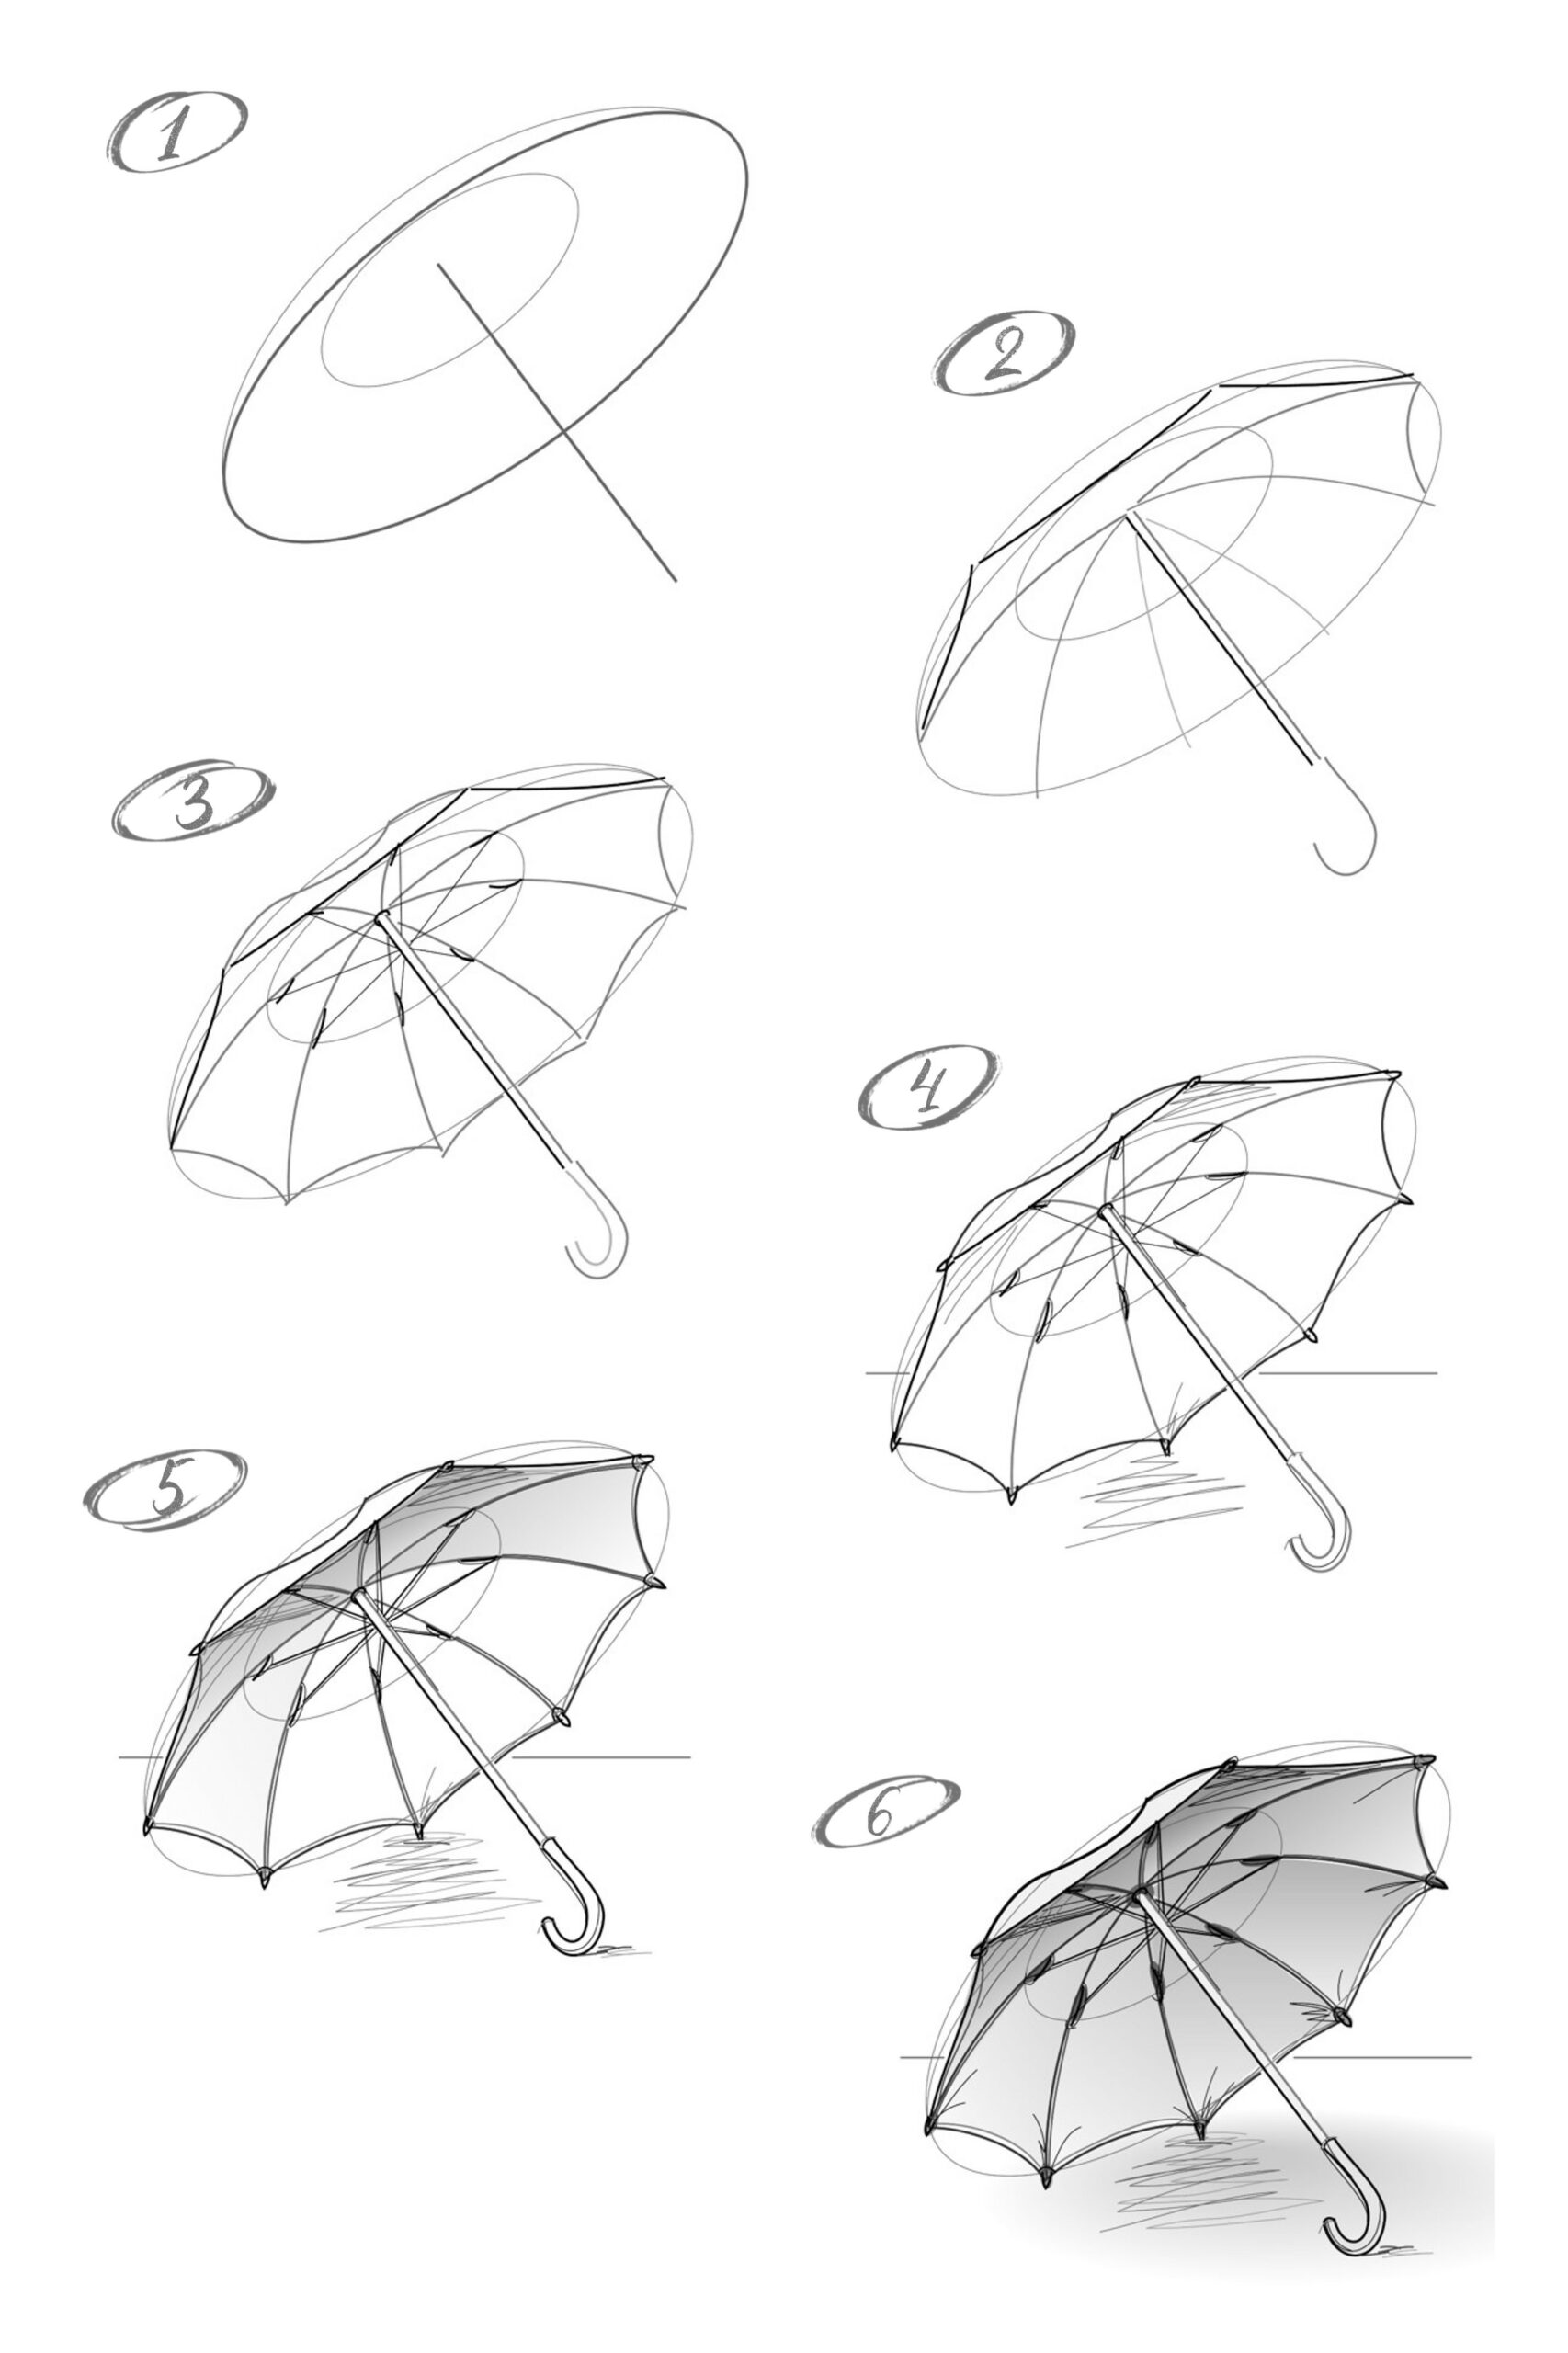 Regenschirm-Idee 7 zeichnen ideen